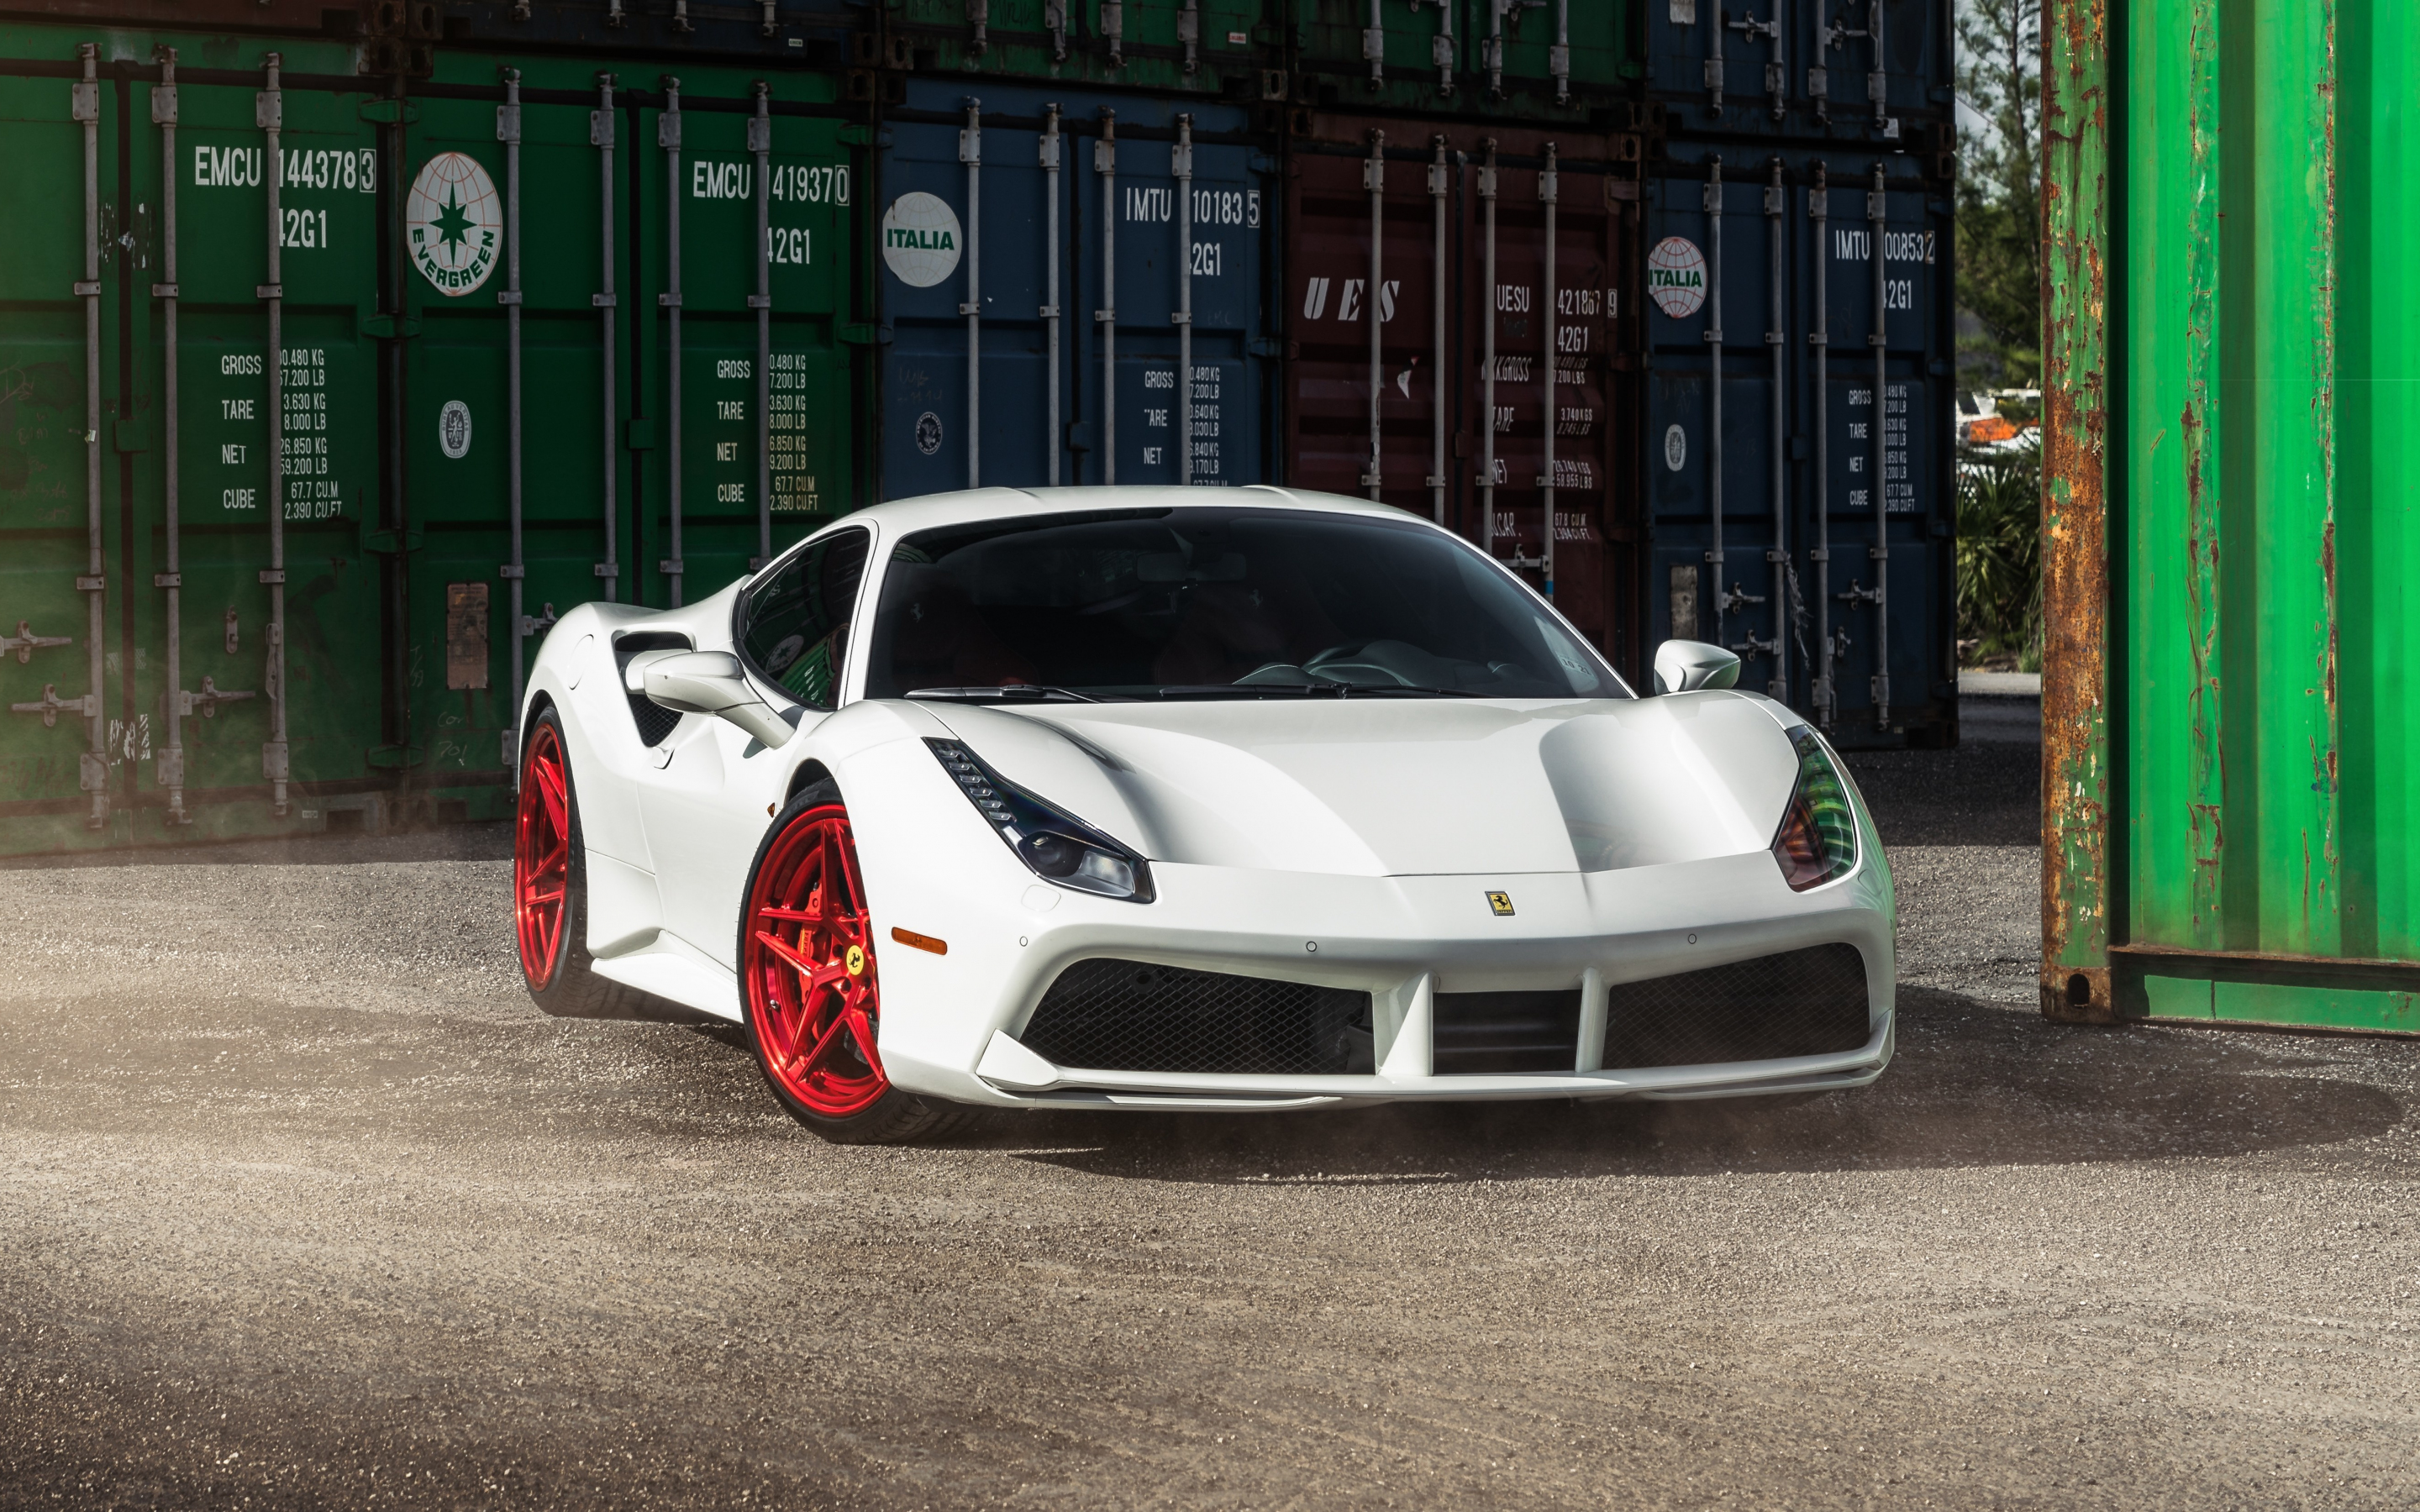 Ferrari 458 Italia, white, sports car, 2880x1800 wallpaper